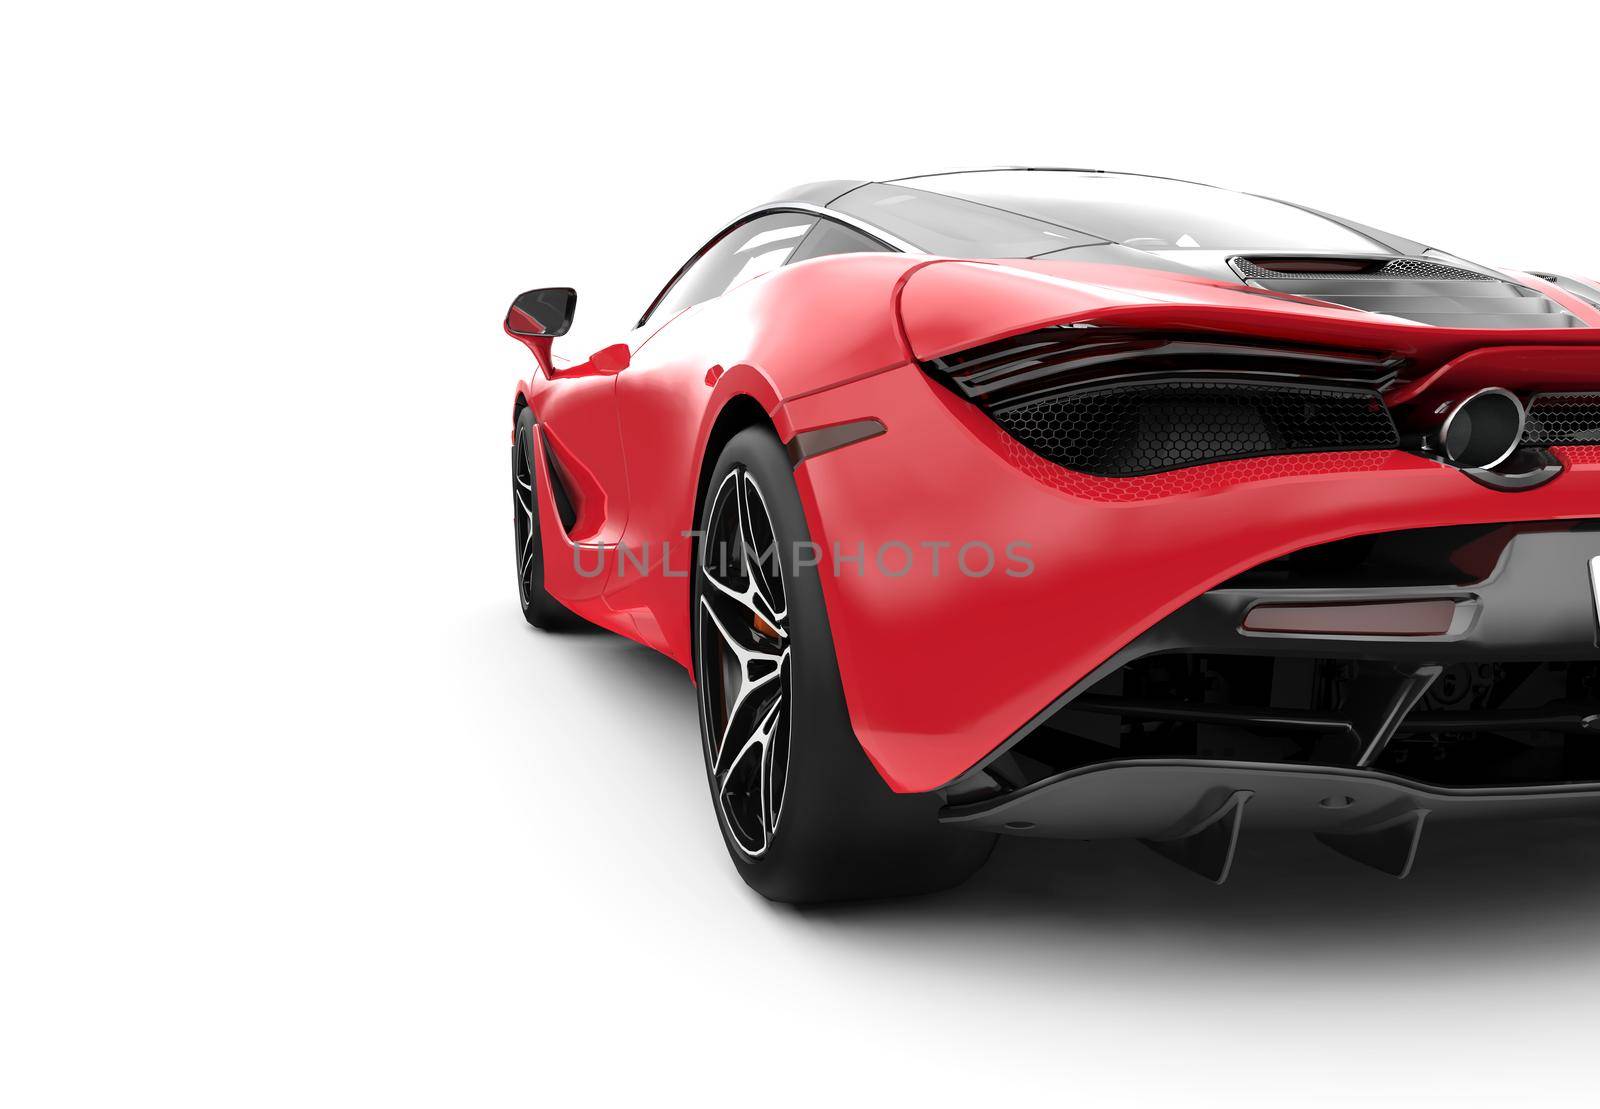 Back of a red modern sport car: 3D illustration